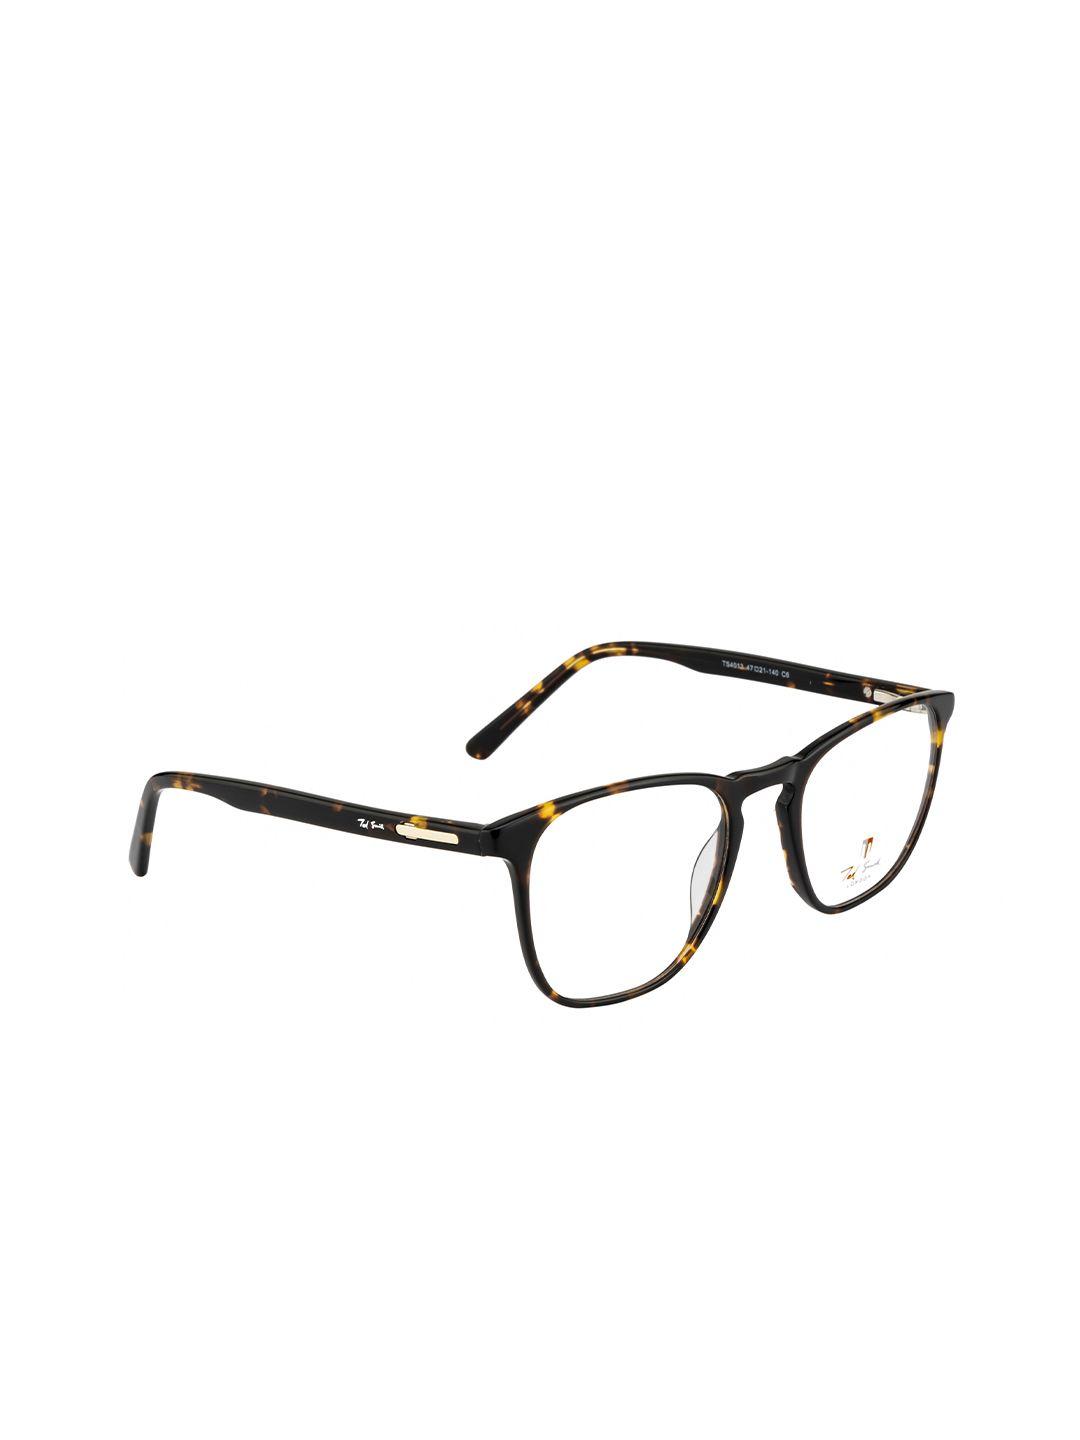 ted smith unisex brown & yellow tortoise shell full rim rectangle frames eyeglasses